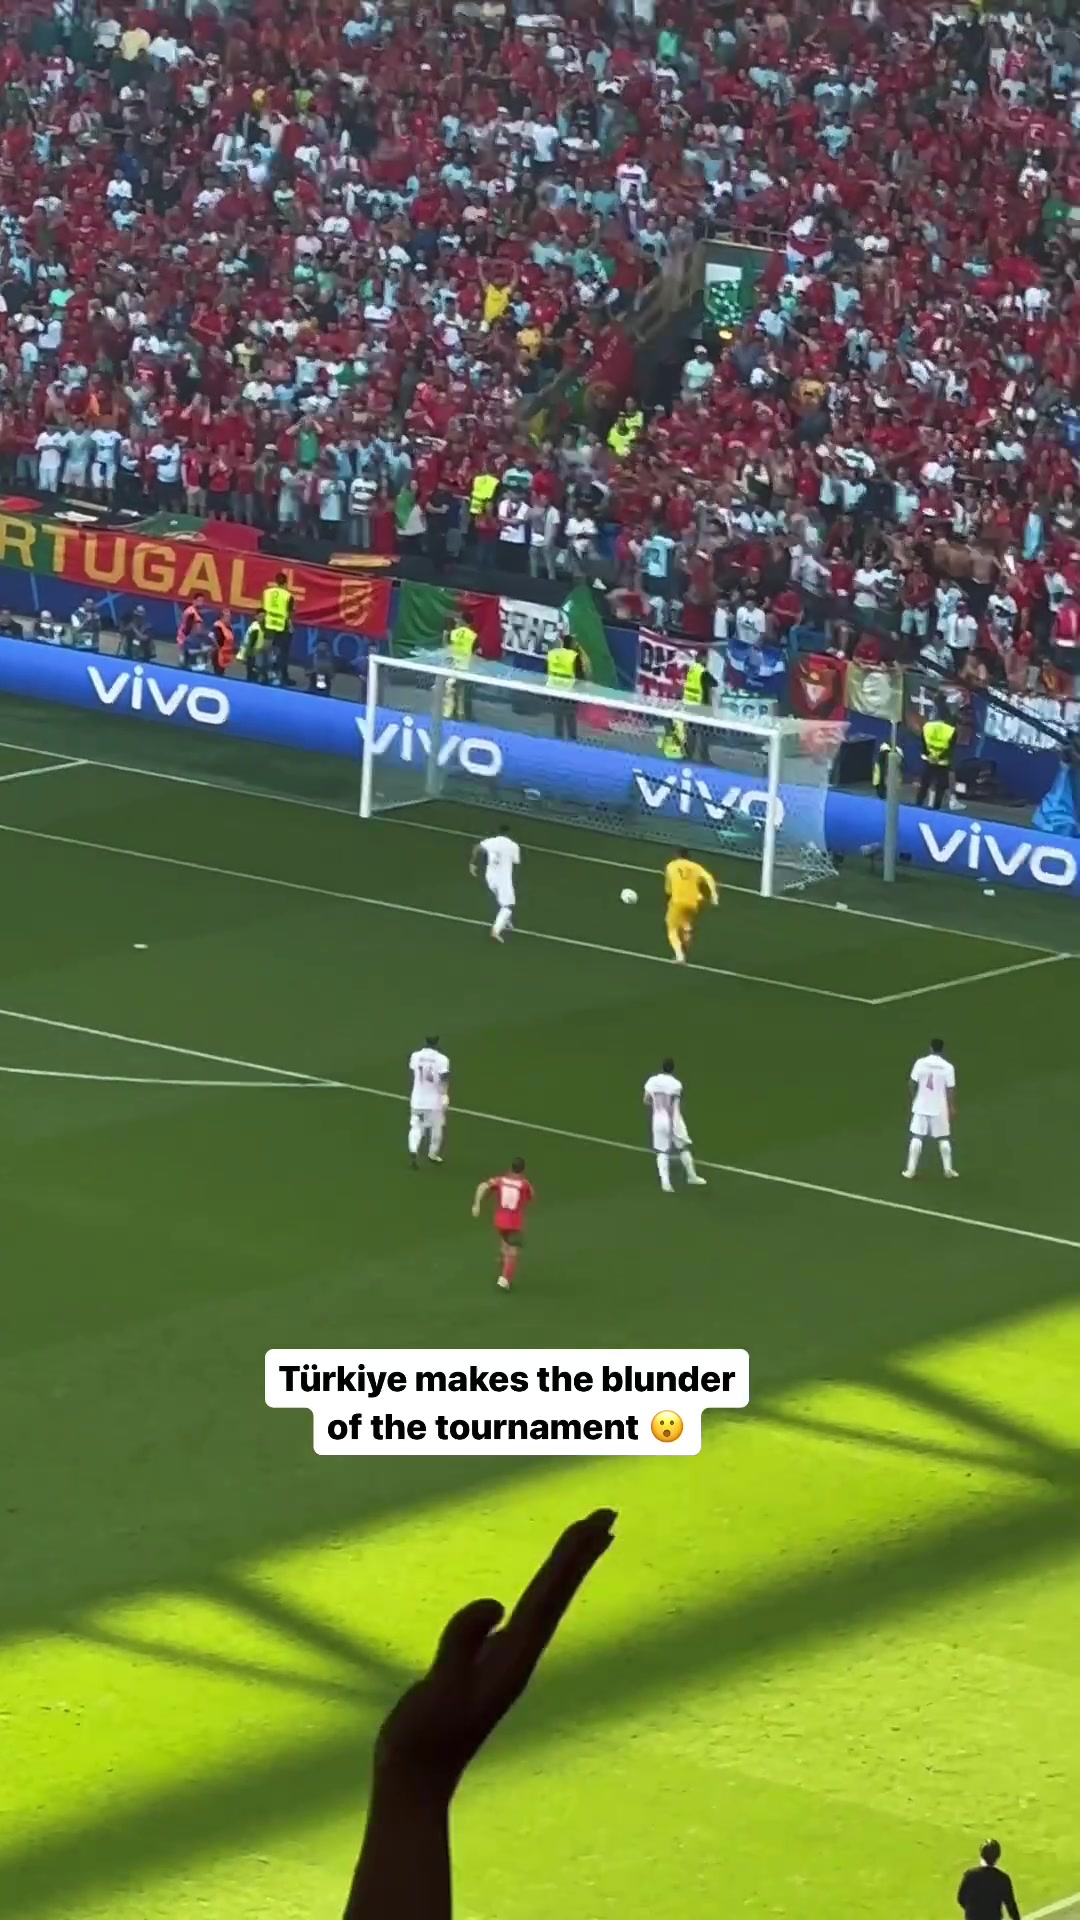  到底发生了什么？球迷视角看土耳其超级巨大的失误